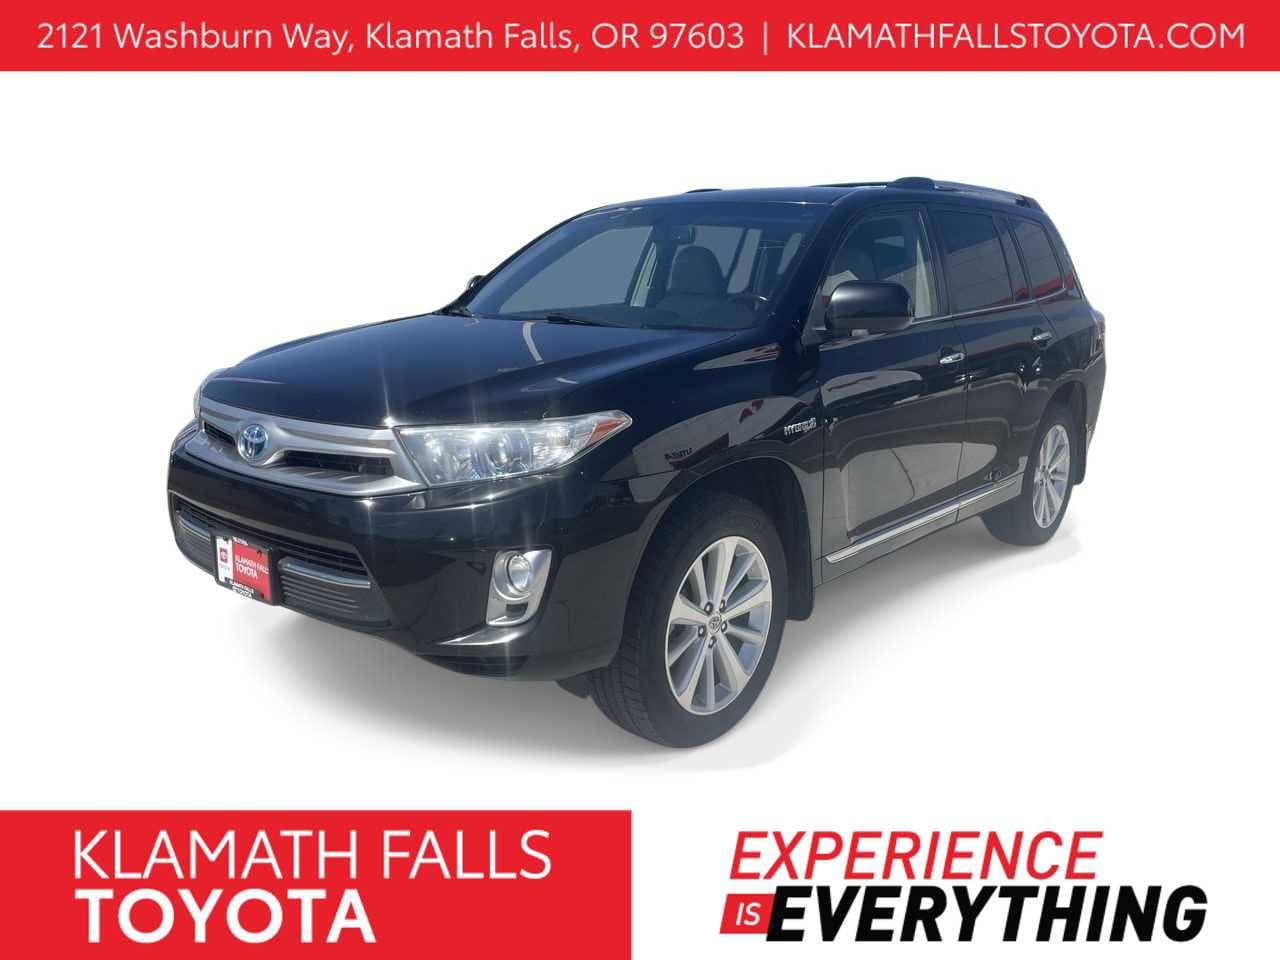 2013 Toyota Highlander Limited -
                Klamath Falls, OR